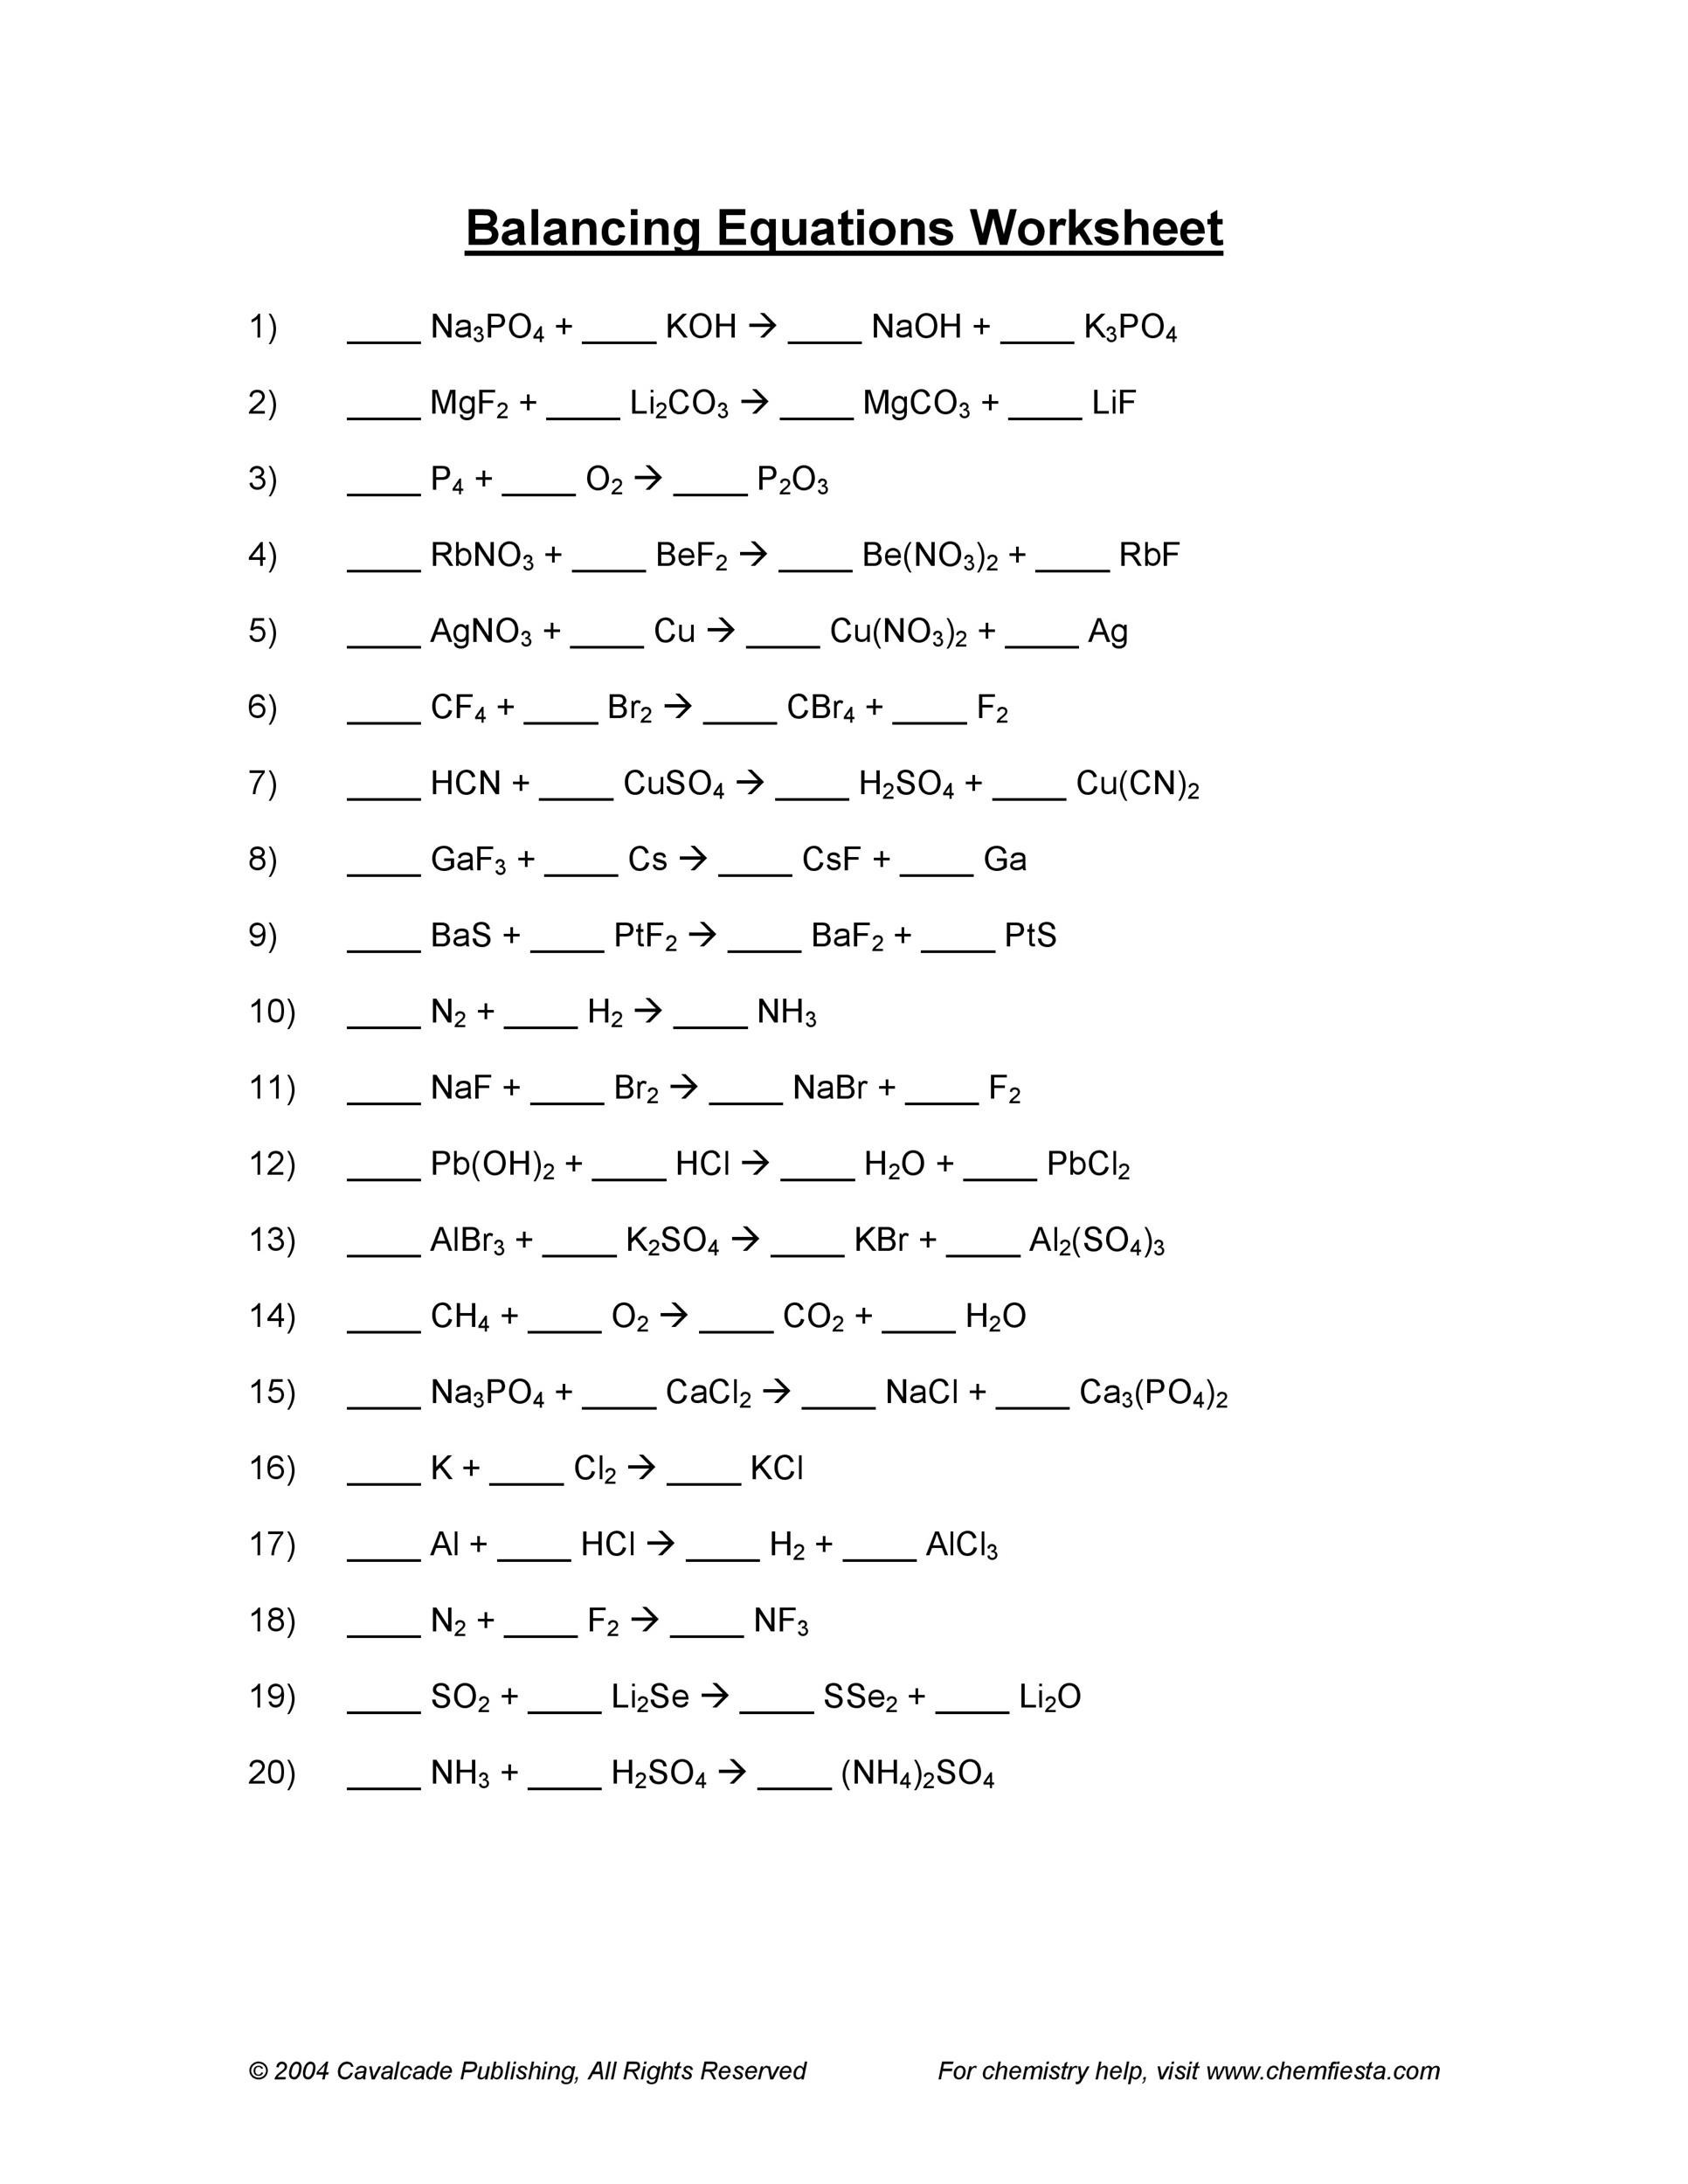 Sampling design worksheet #1 writing and balancing formula equations answers